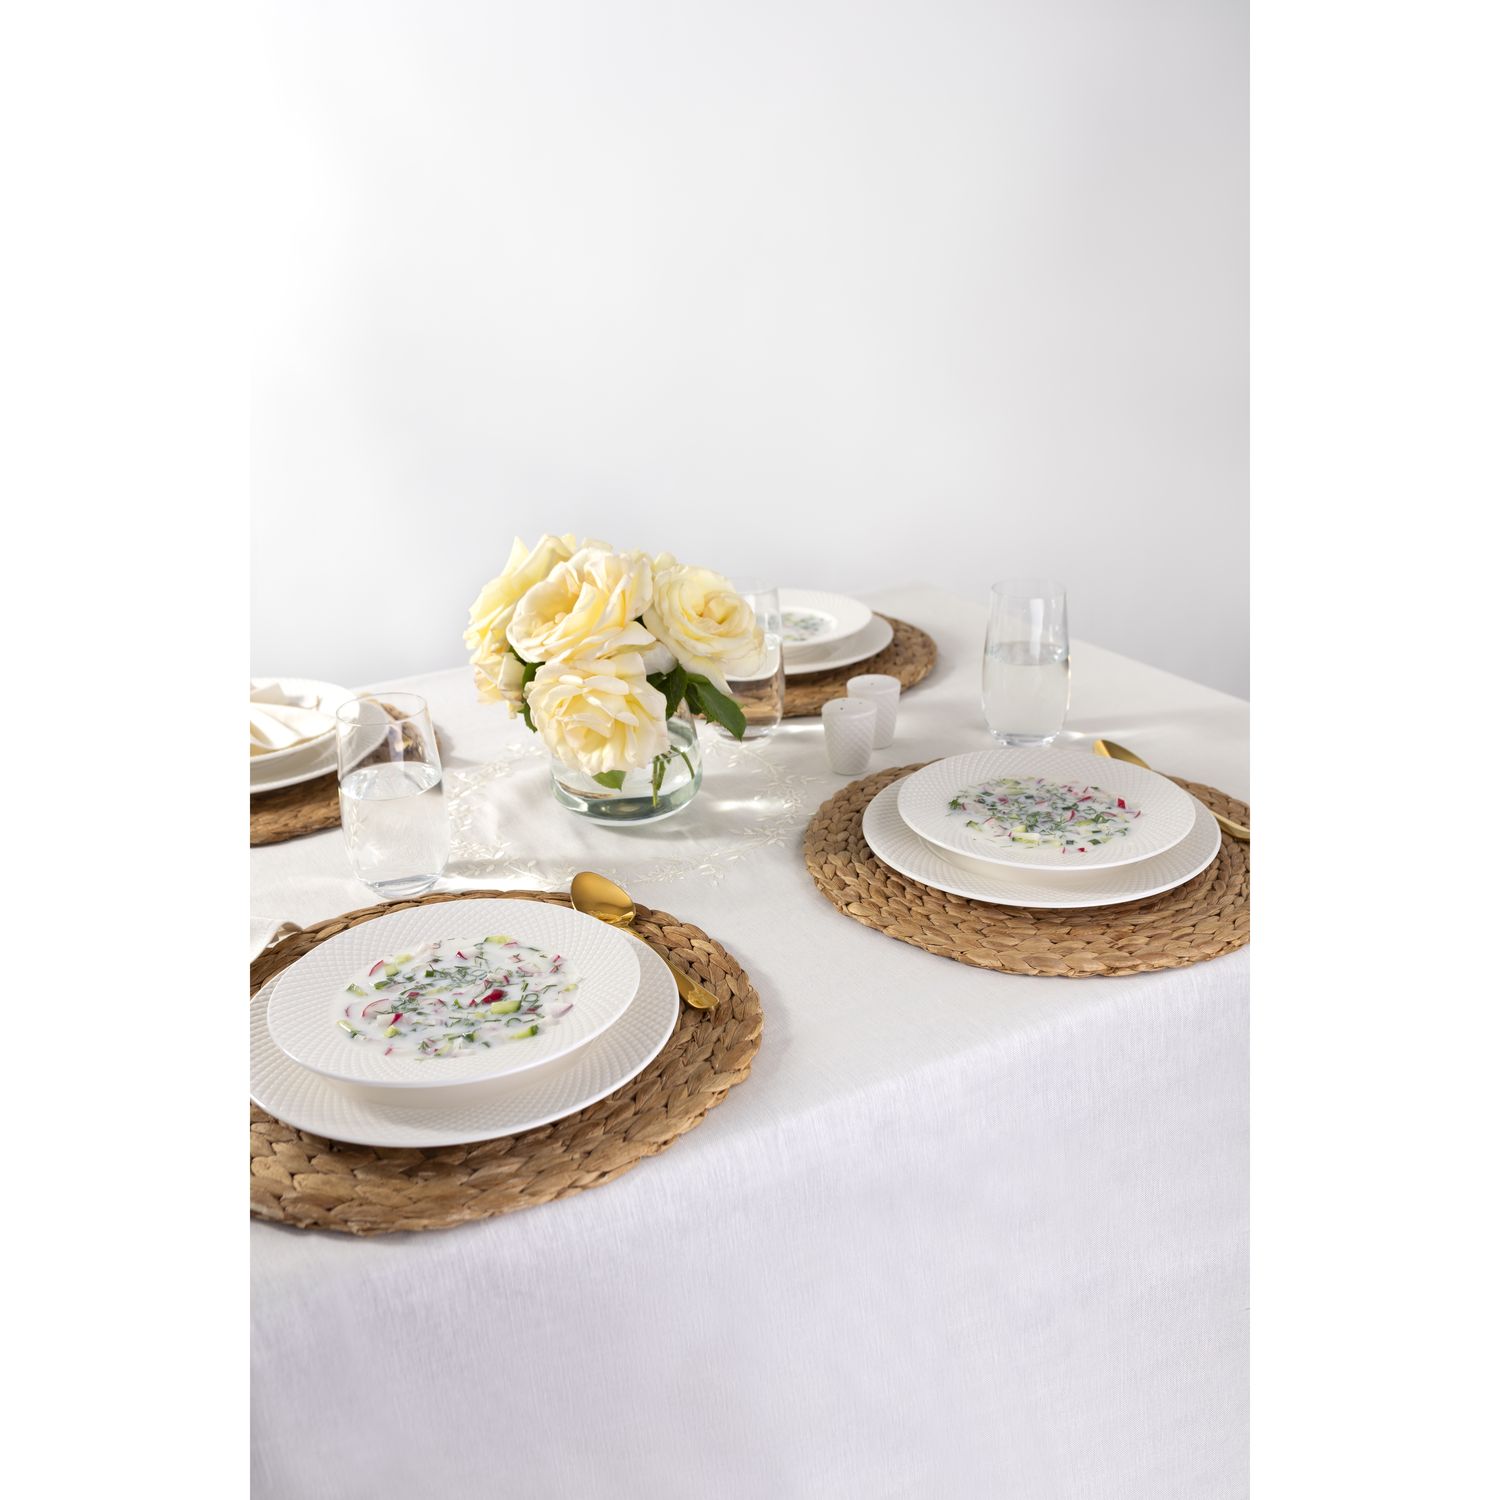 Набор фарфоровых суповых тарелок Krauff из коллекции Лизы Глинской 22 см 4 шт. (21-316-008) - фото 11